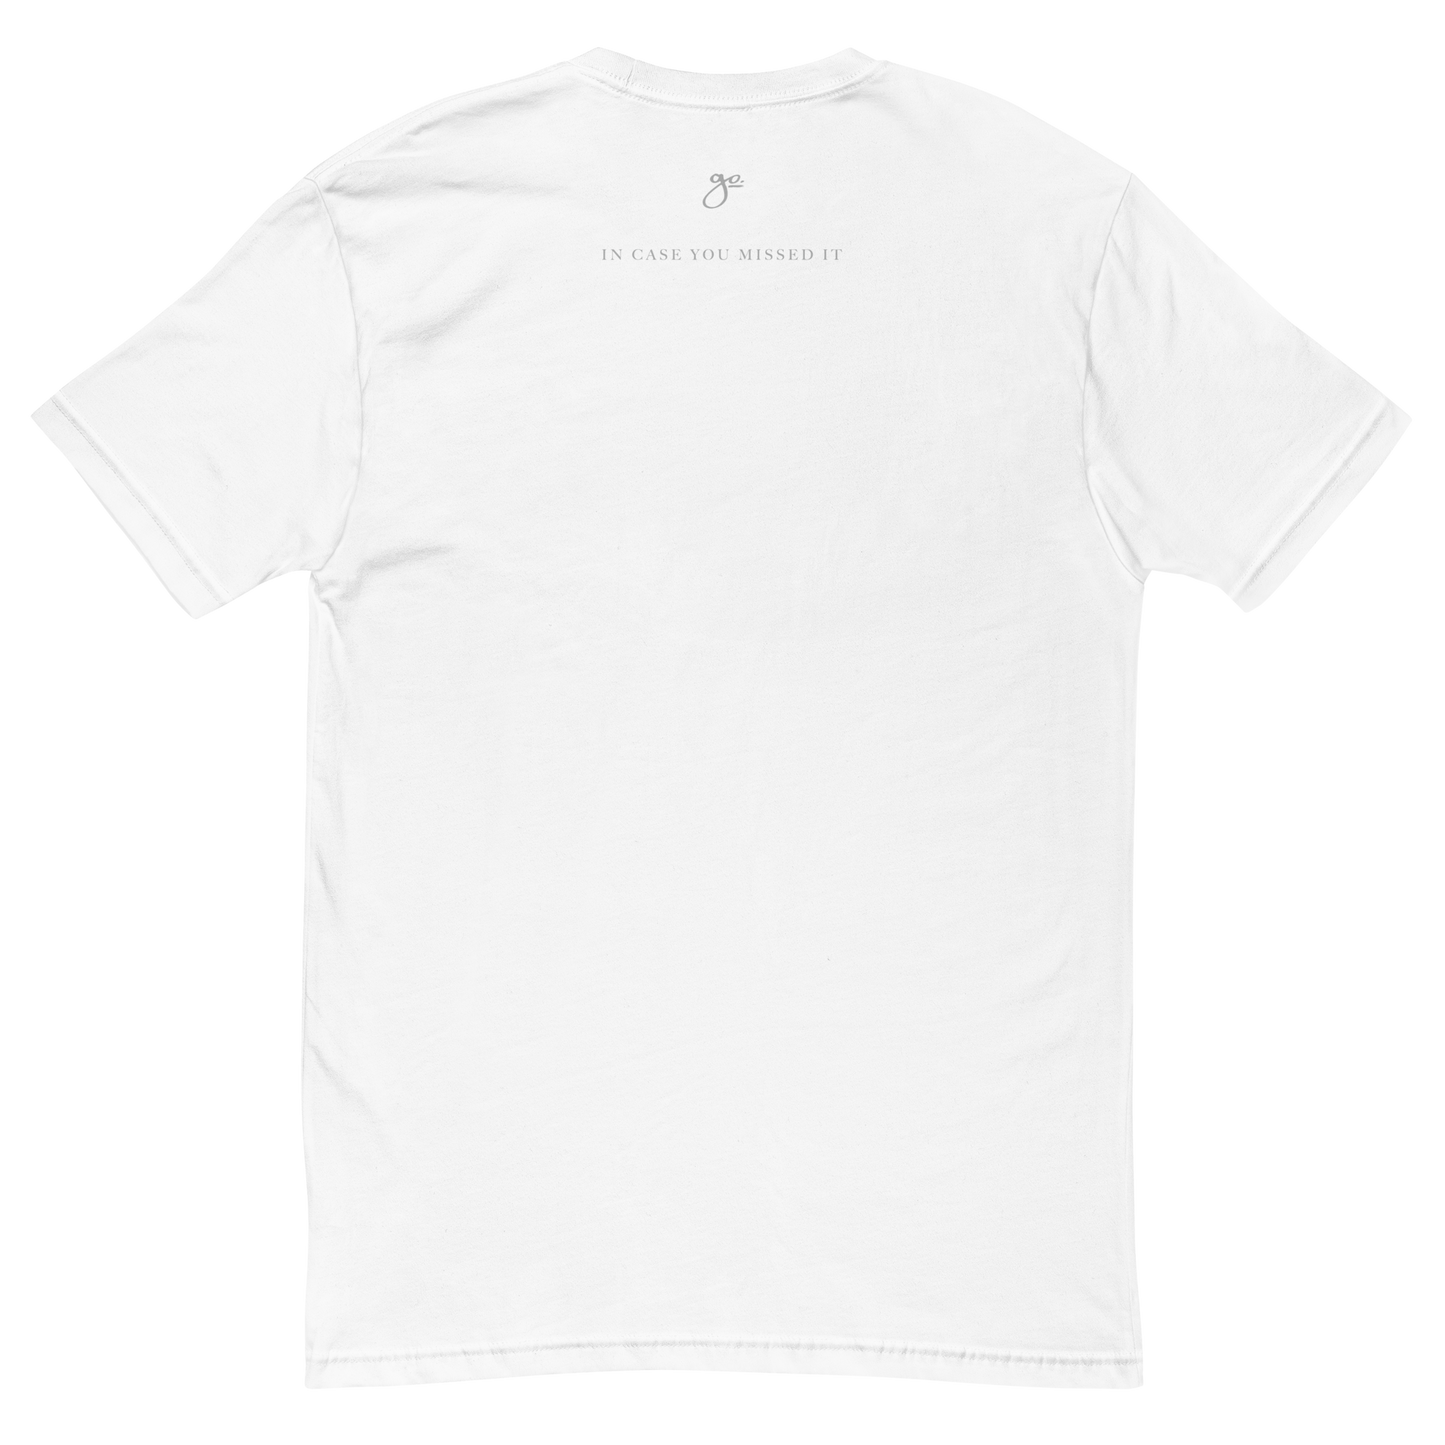 ICYMI T-Shirt